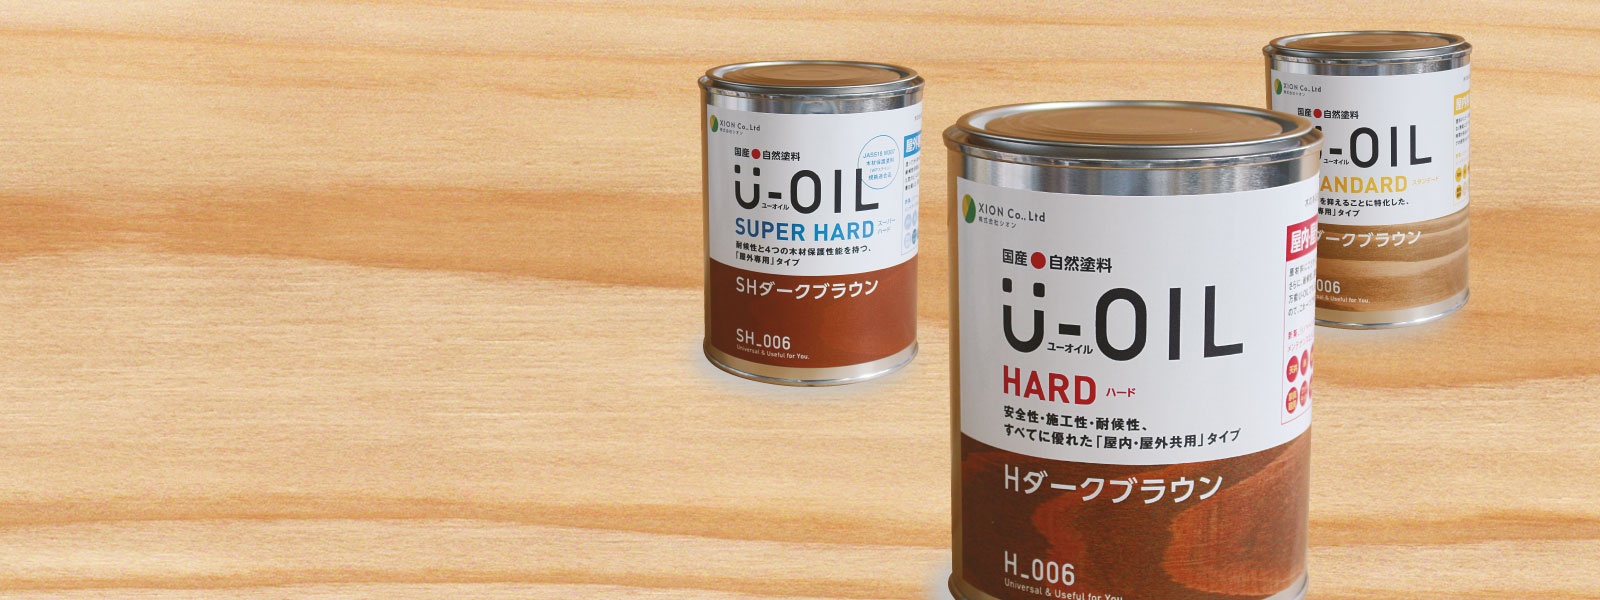 U-oil